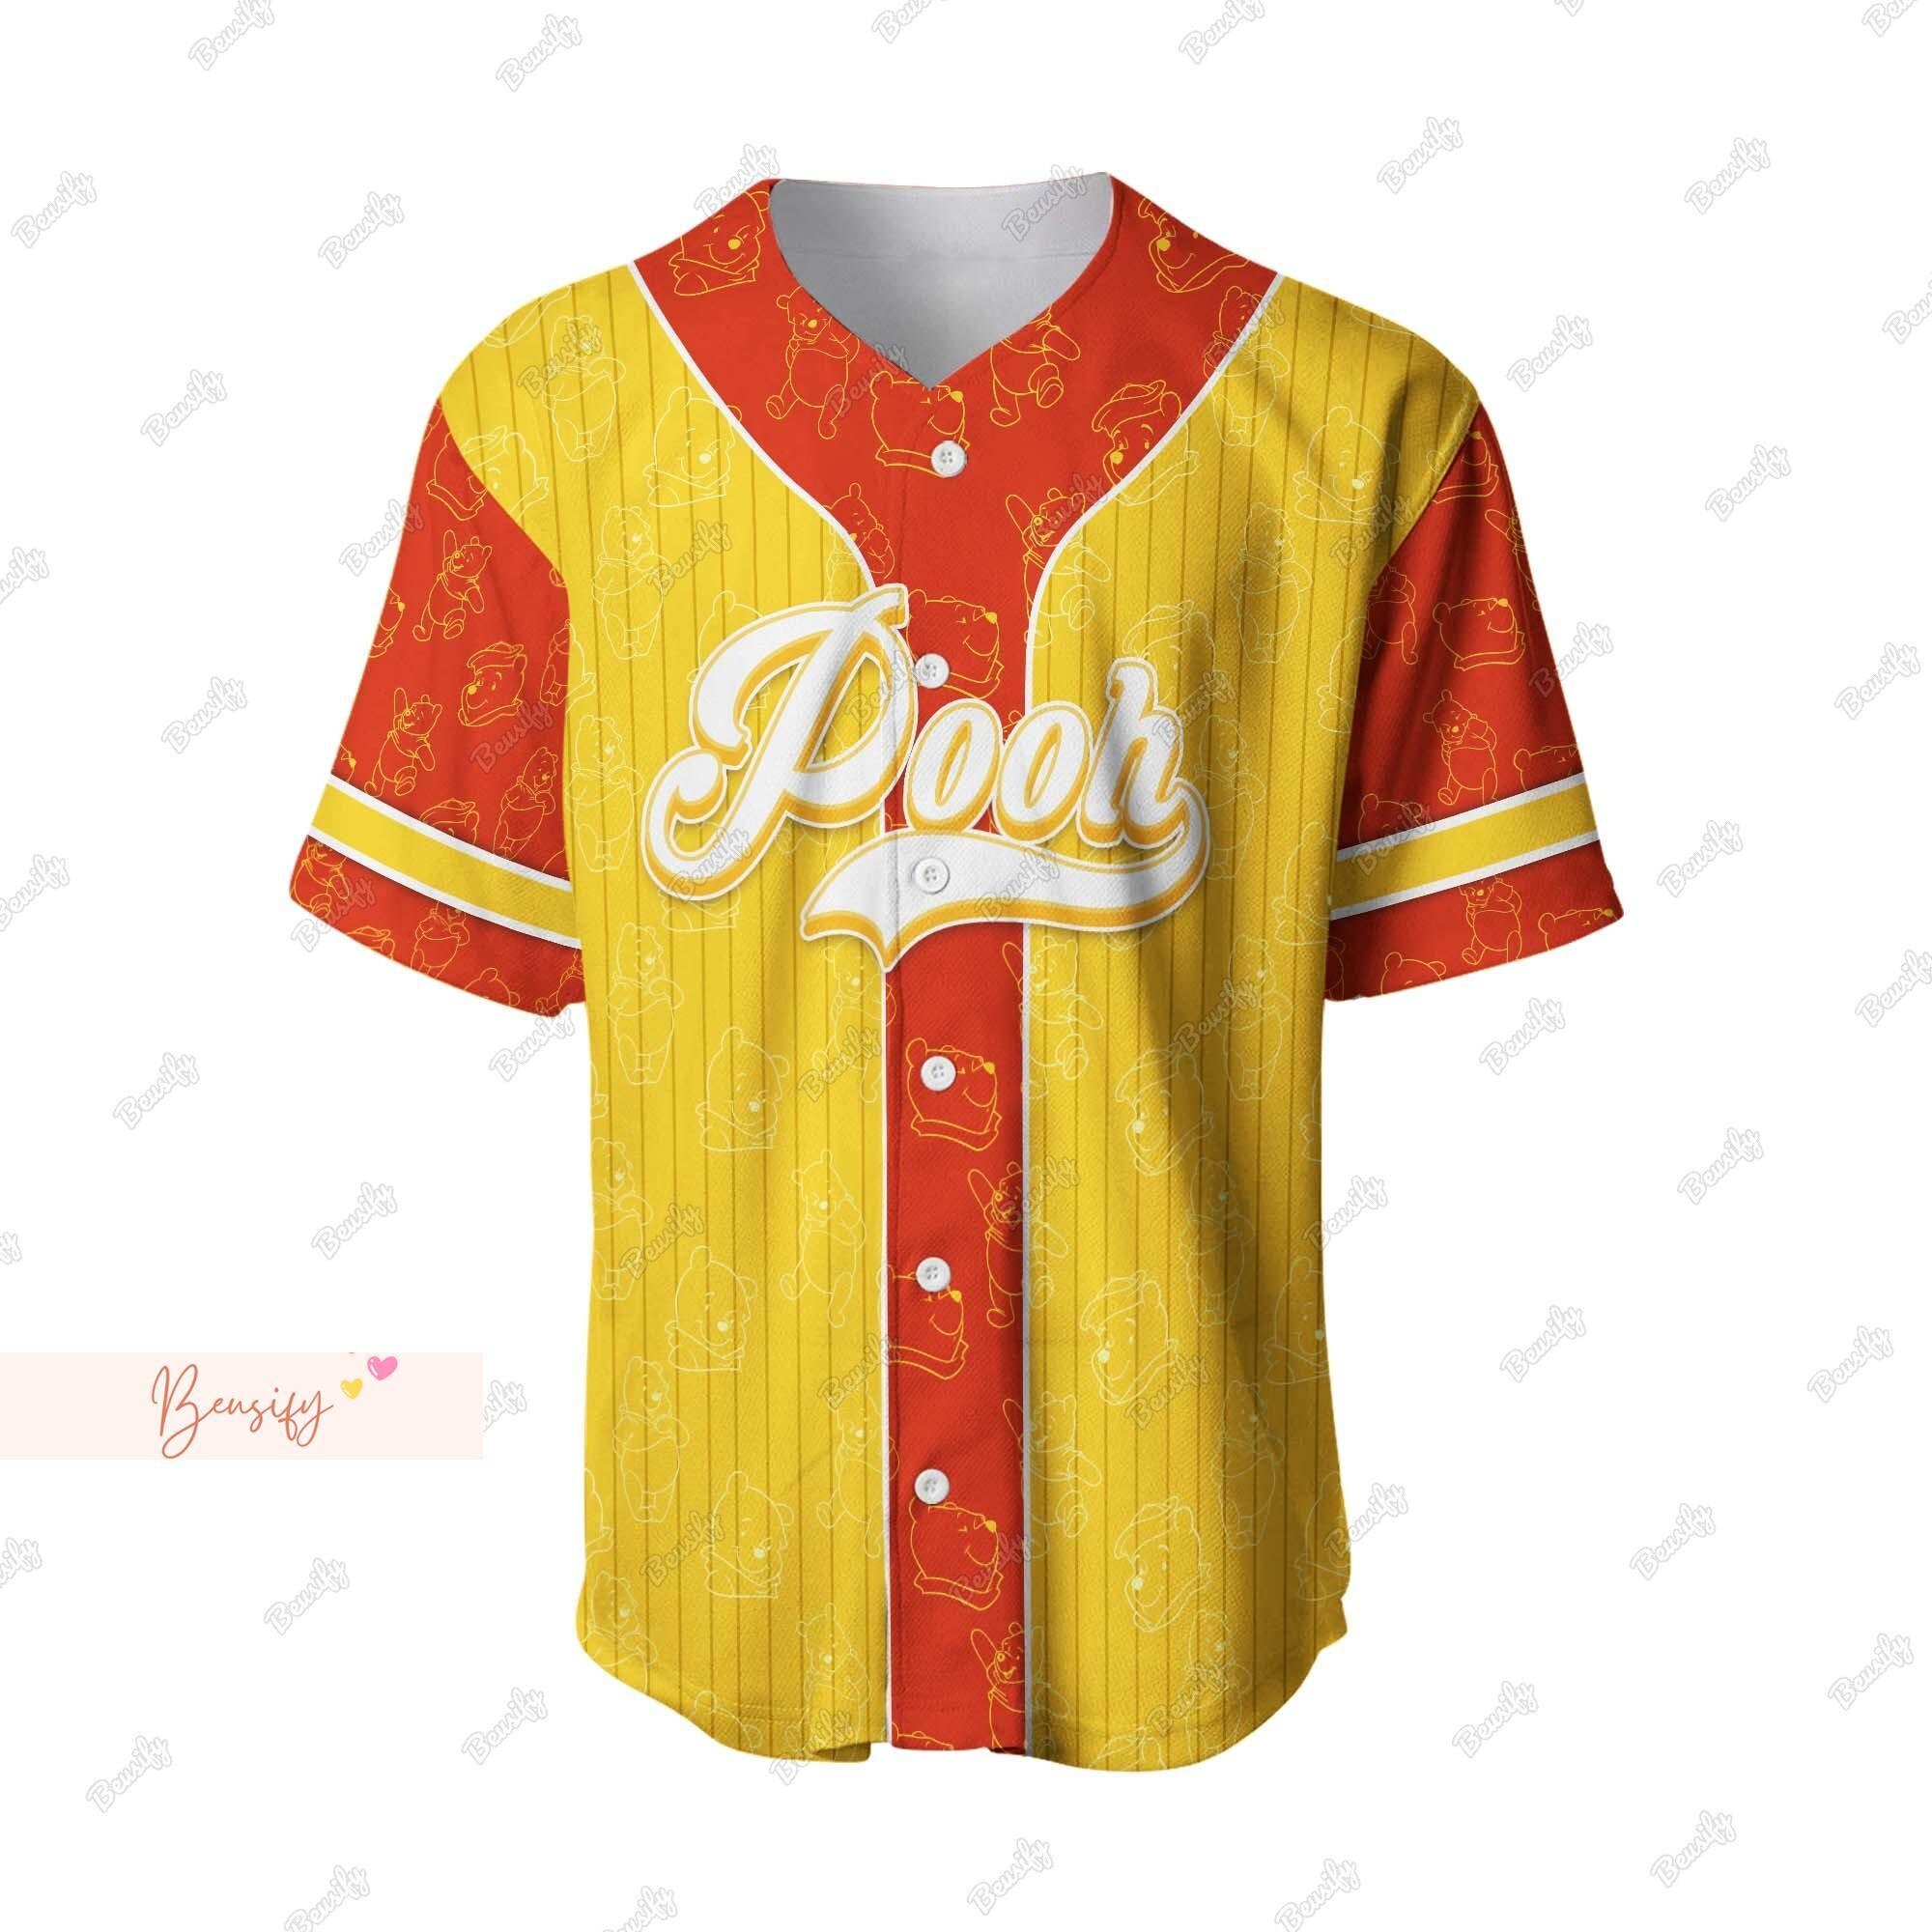 Pooh Jersey Shirt, Personalized Pooh Baseball Shirt, Winnie The Pooh Jersey